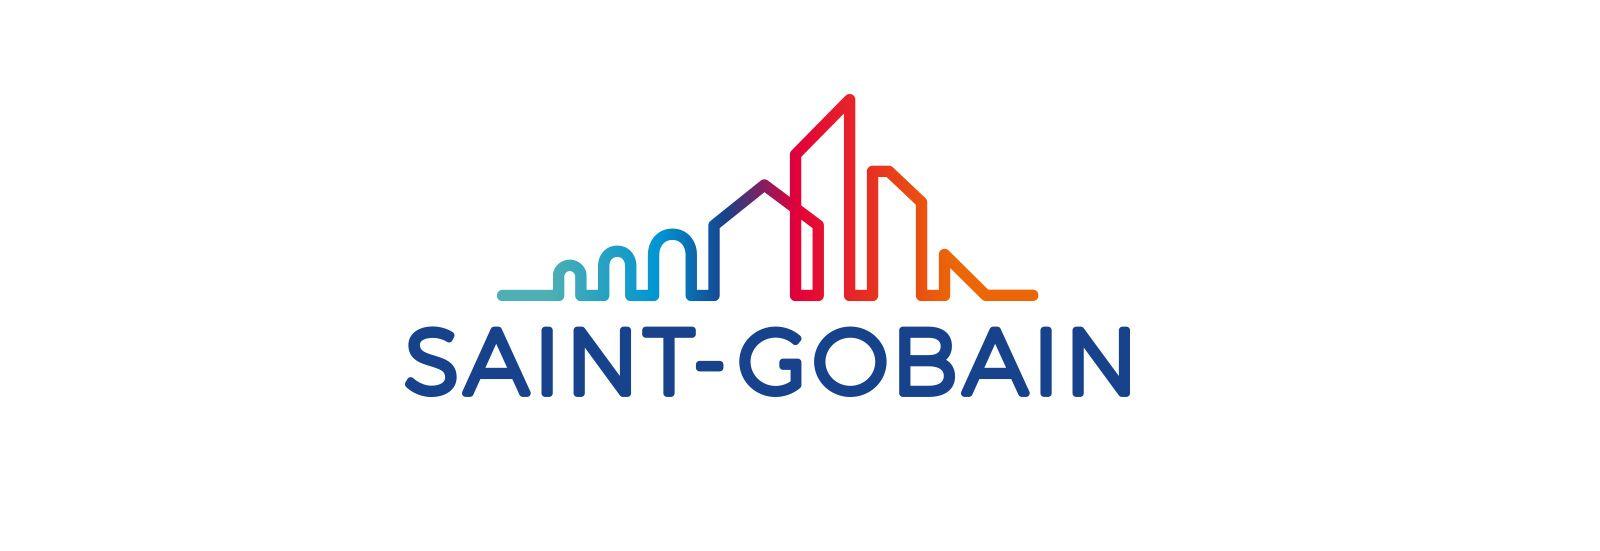 Saint-Gobain Logo - Saint gobain Logos